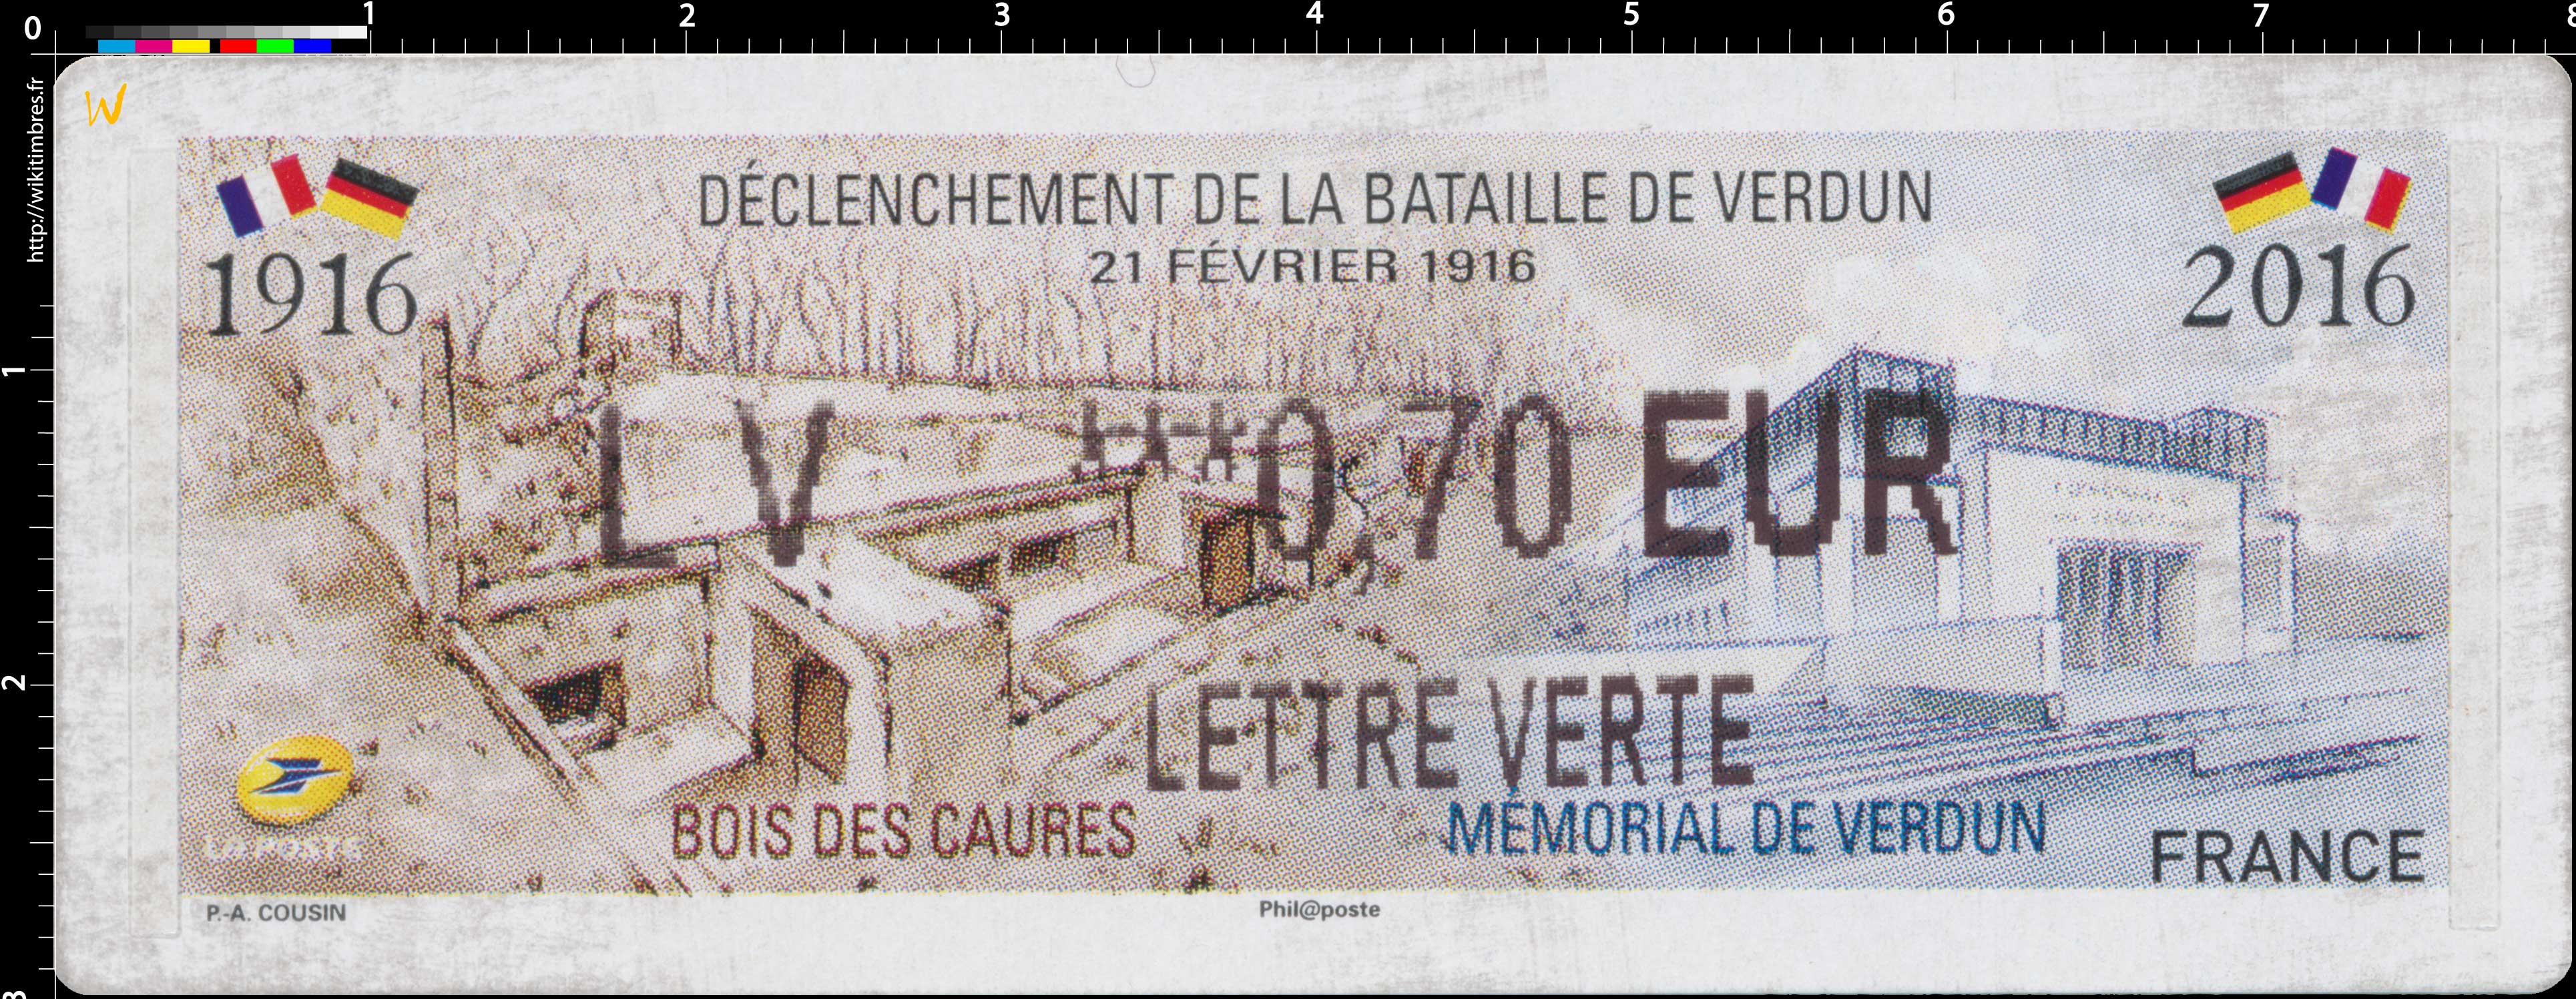 2016 Déclenchement de la bataille de Verdun 21 février 1916